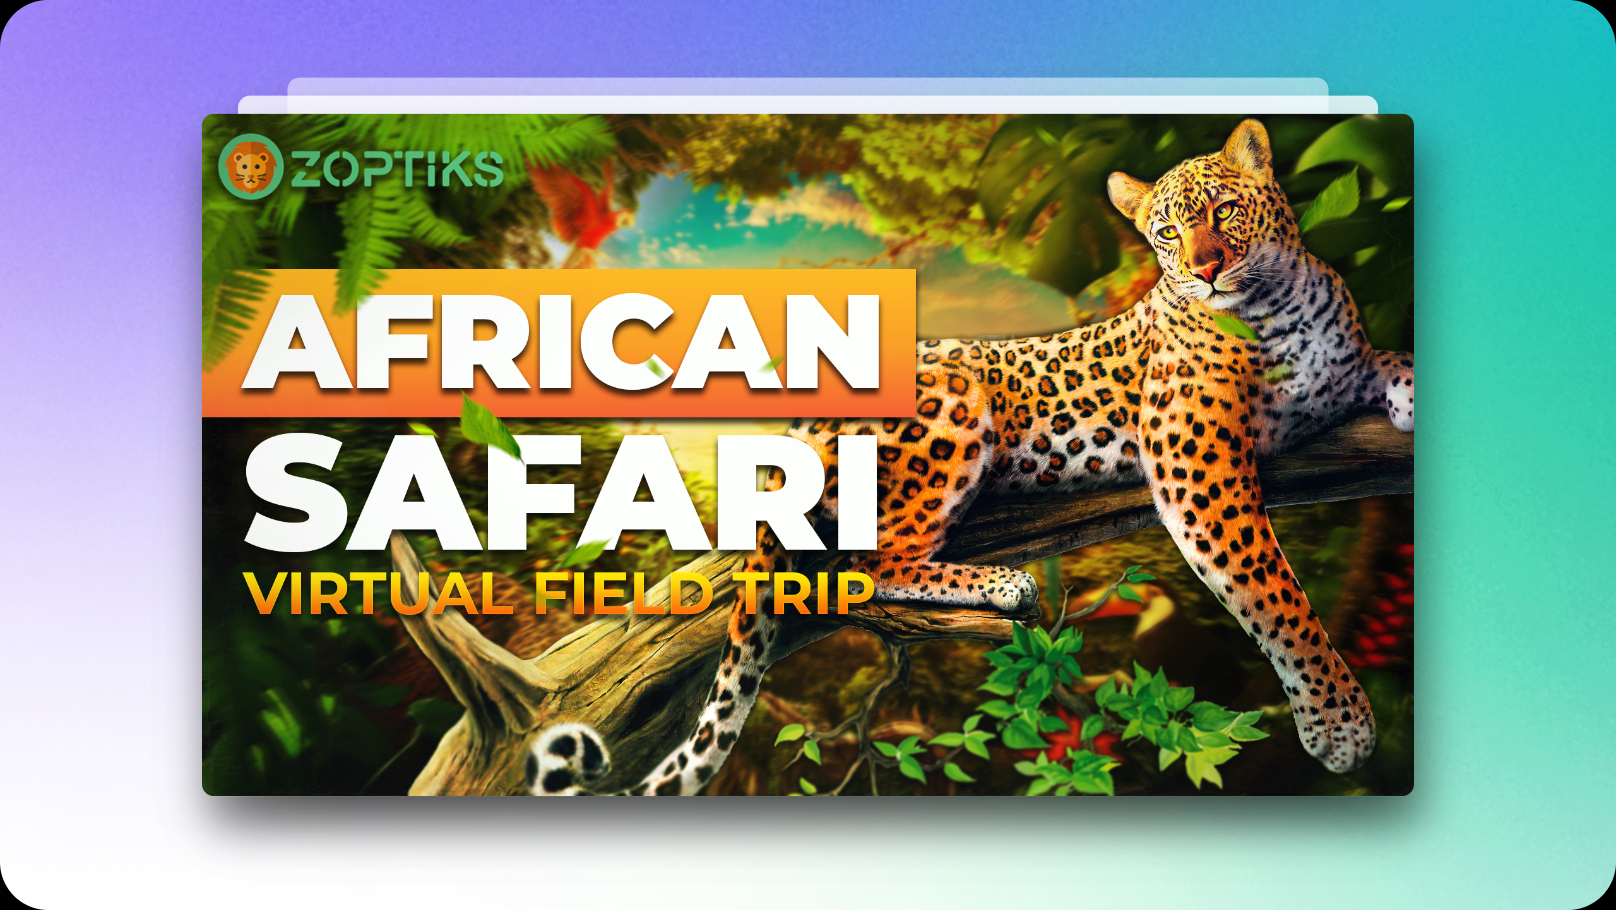 The African Safari